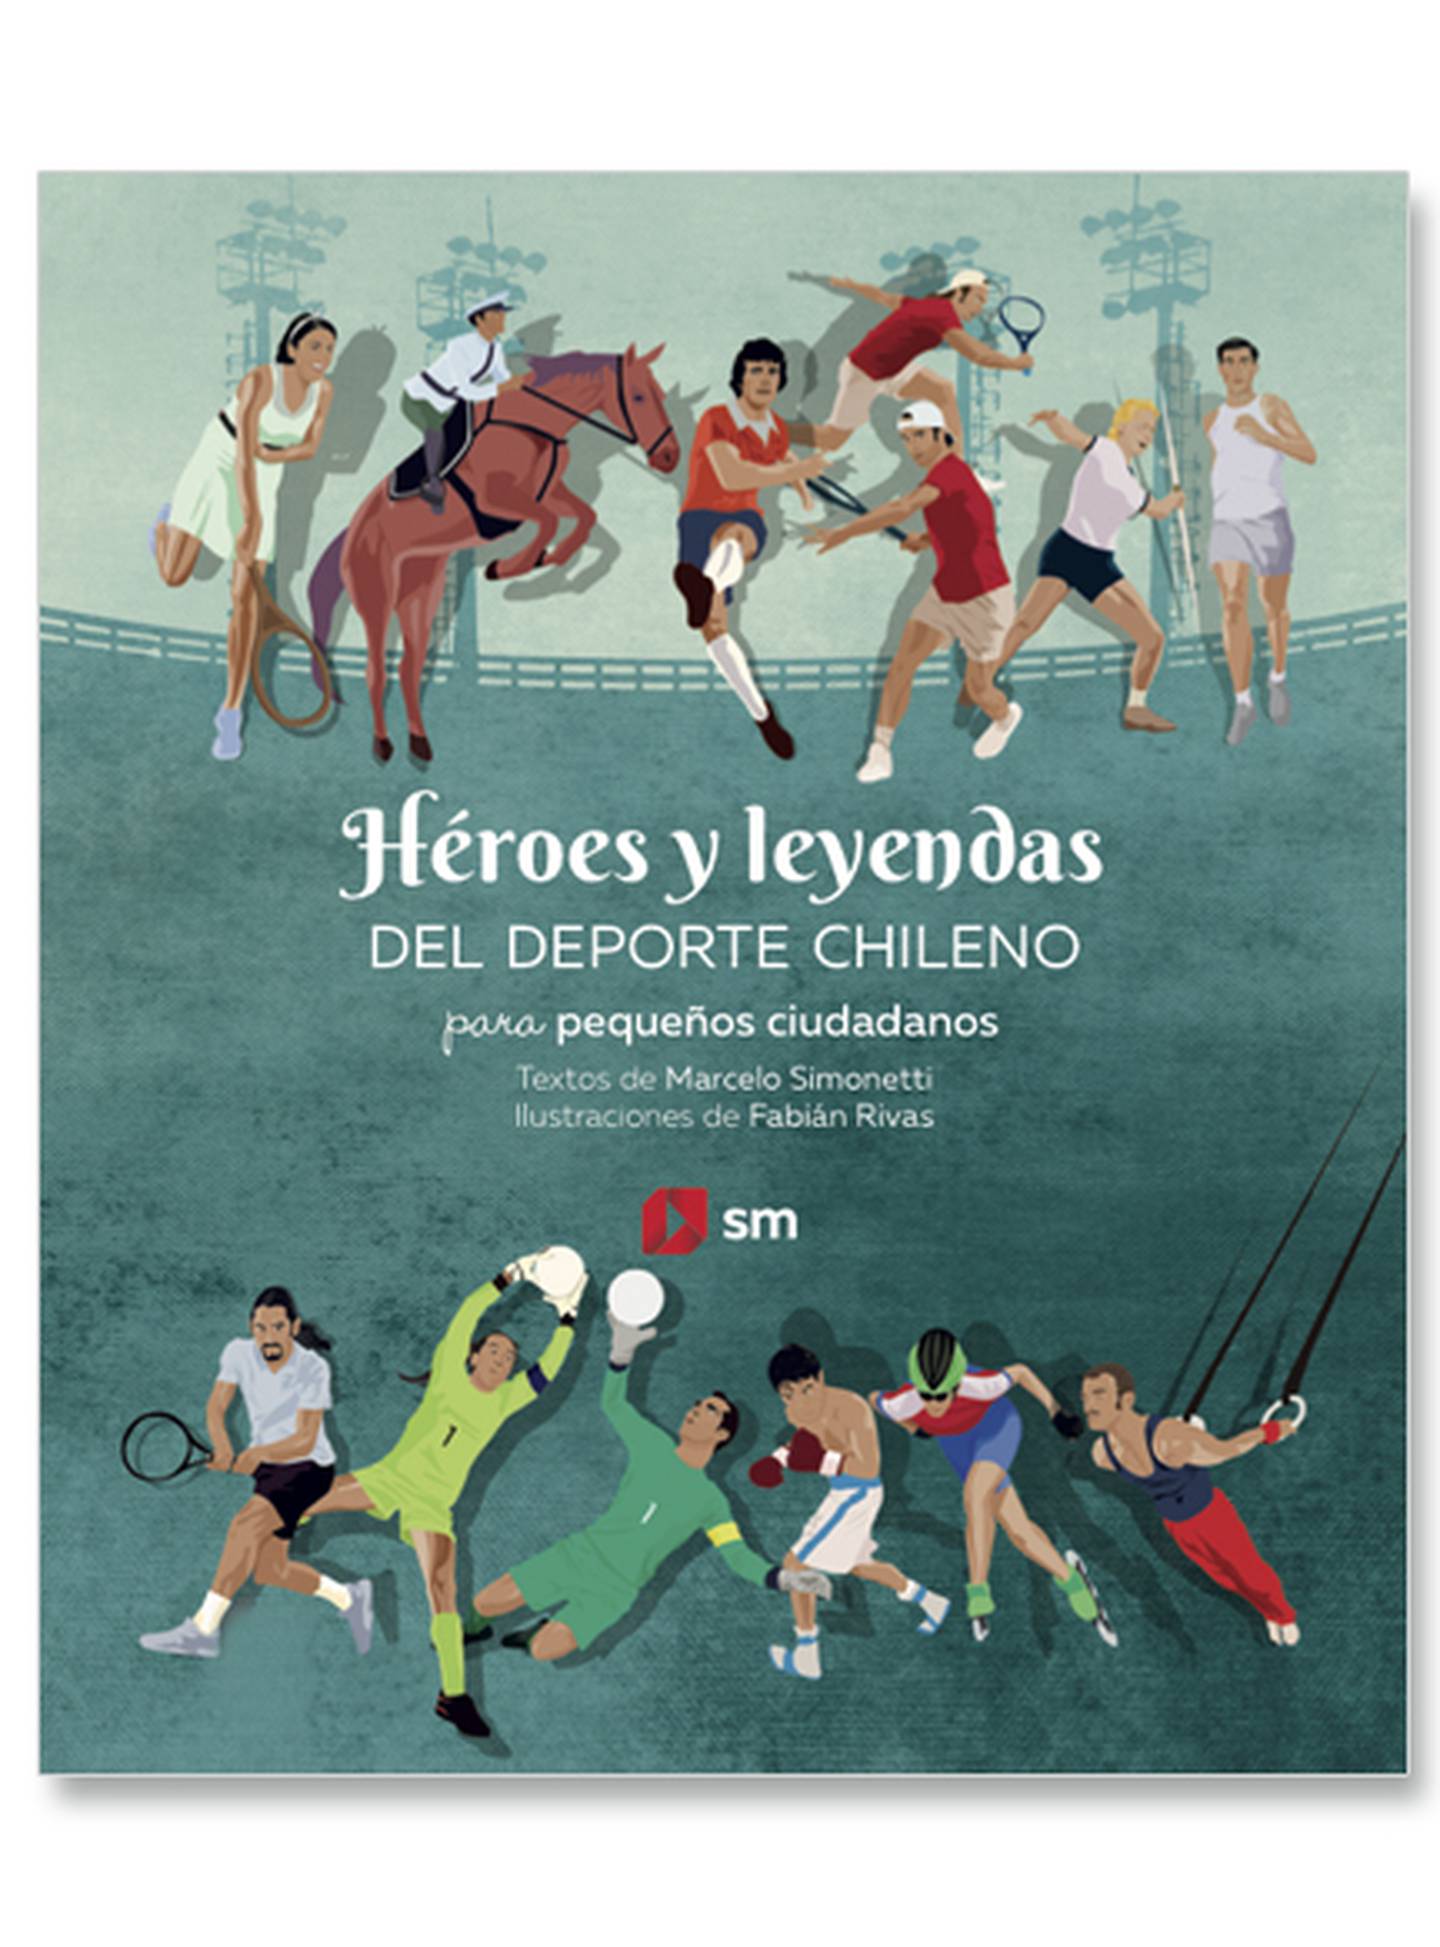 La portada del libro "Héroes y Leyendas del Deporte Chileno"